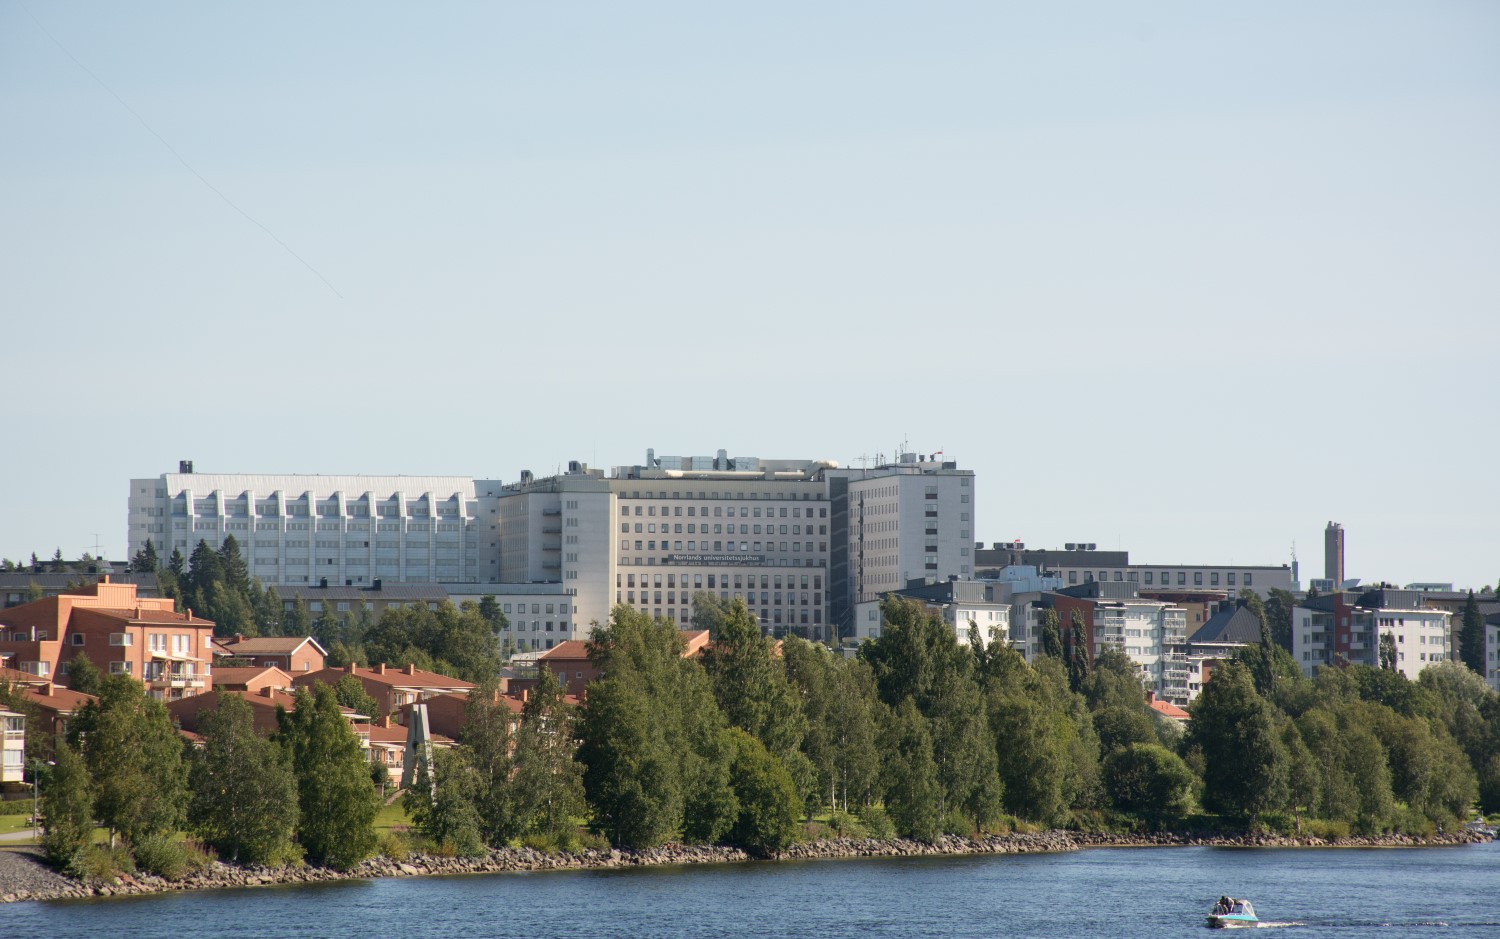 Norrlands universitetssjukhus.